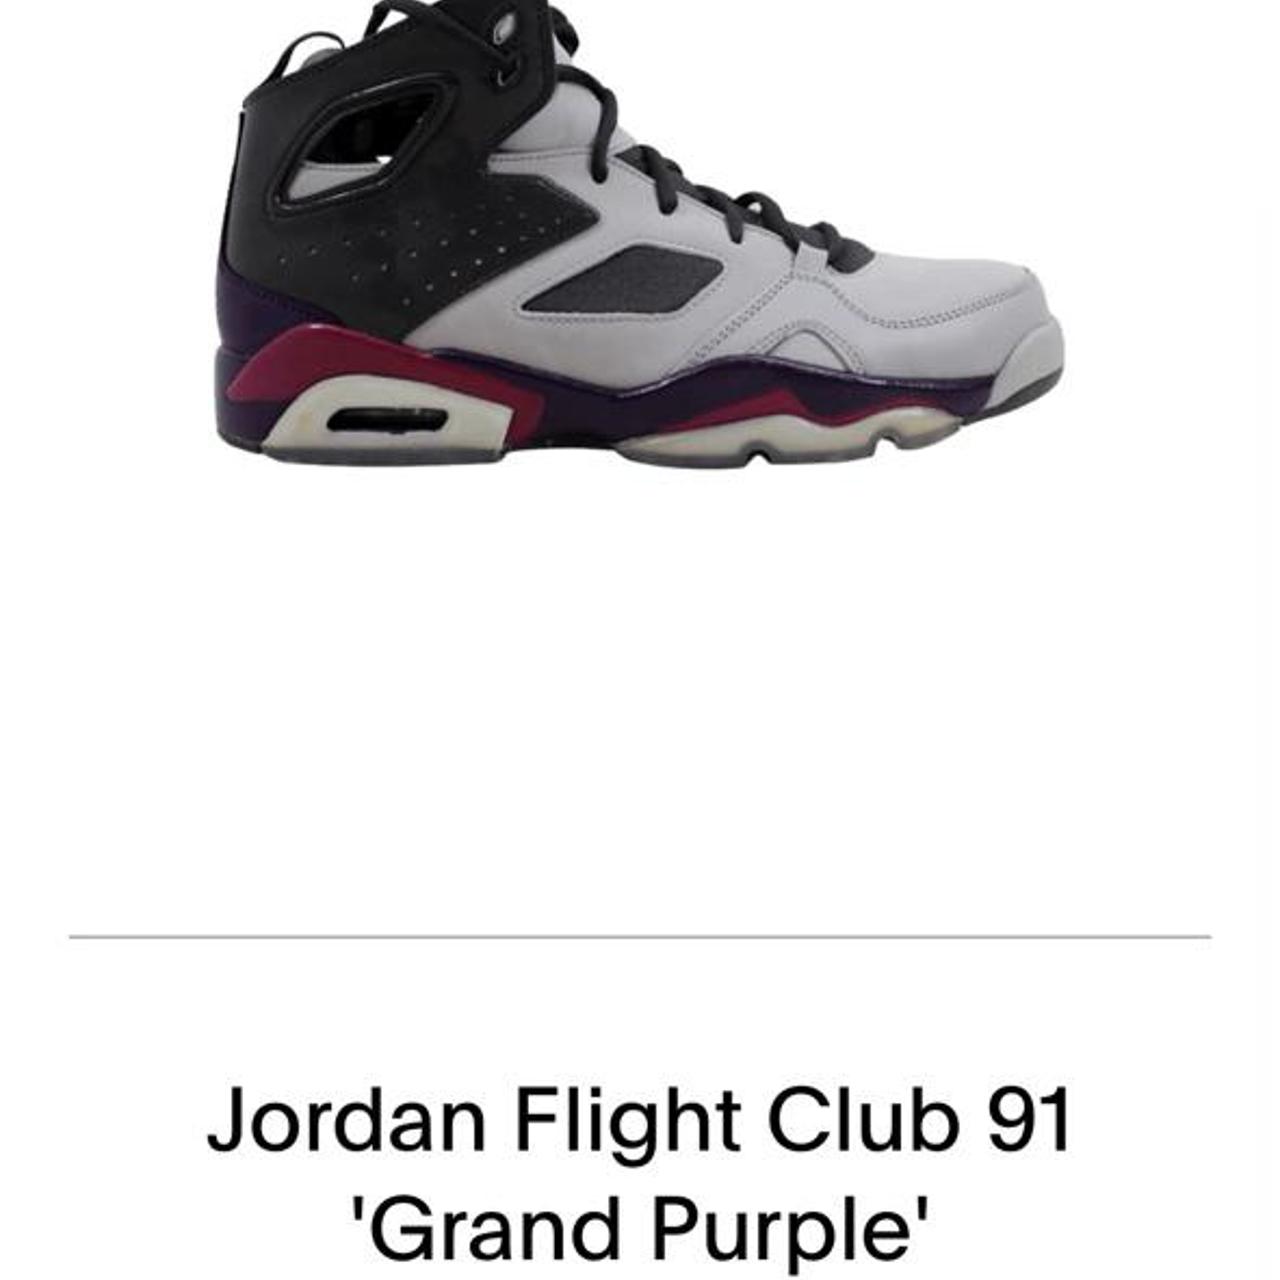 Jordan Flight Club 91 Grand Purple Size 11.5, Sick...